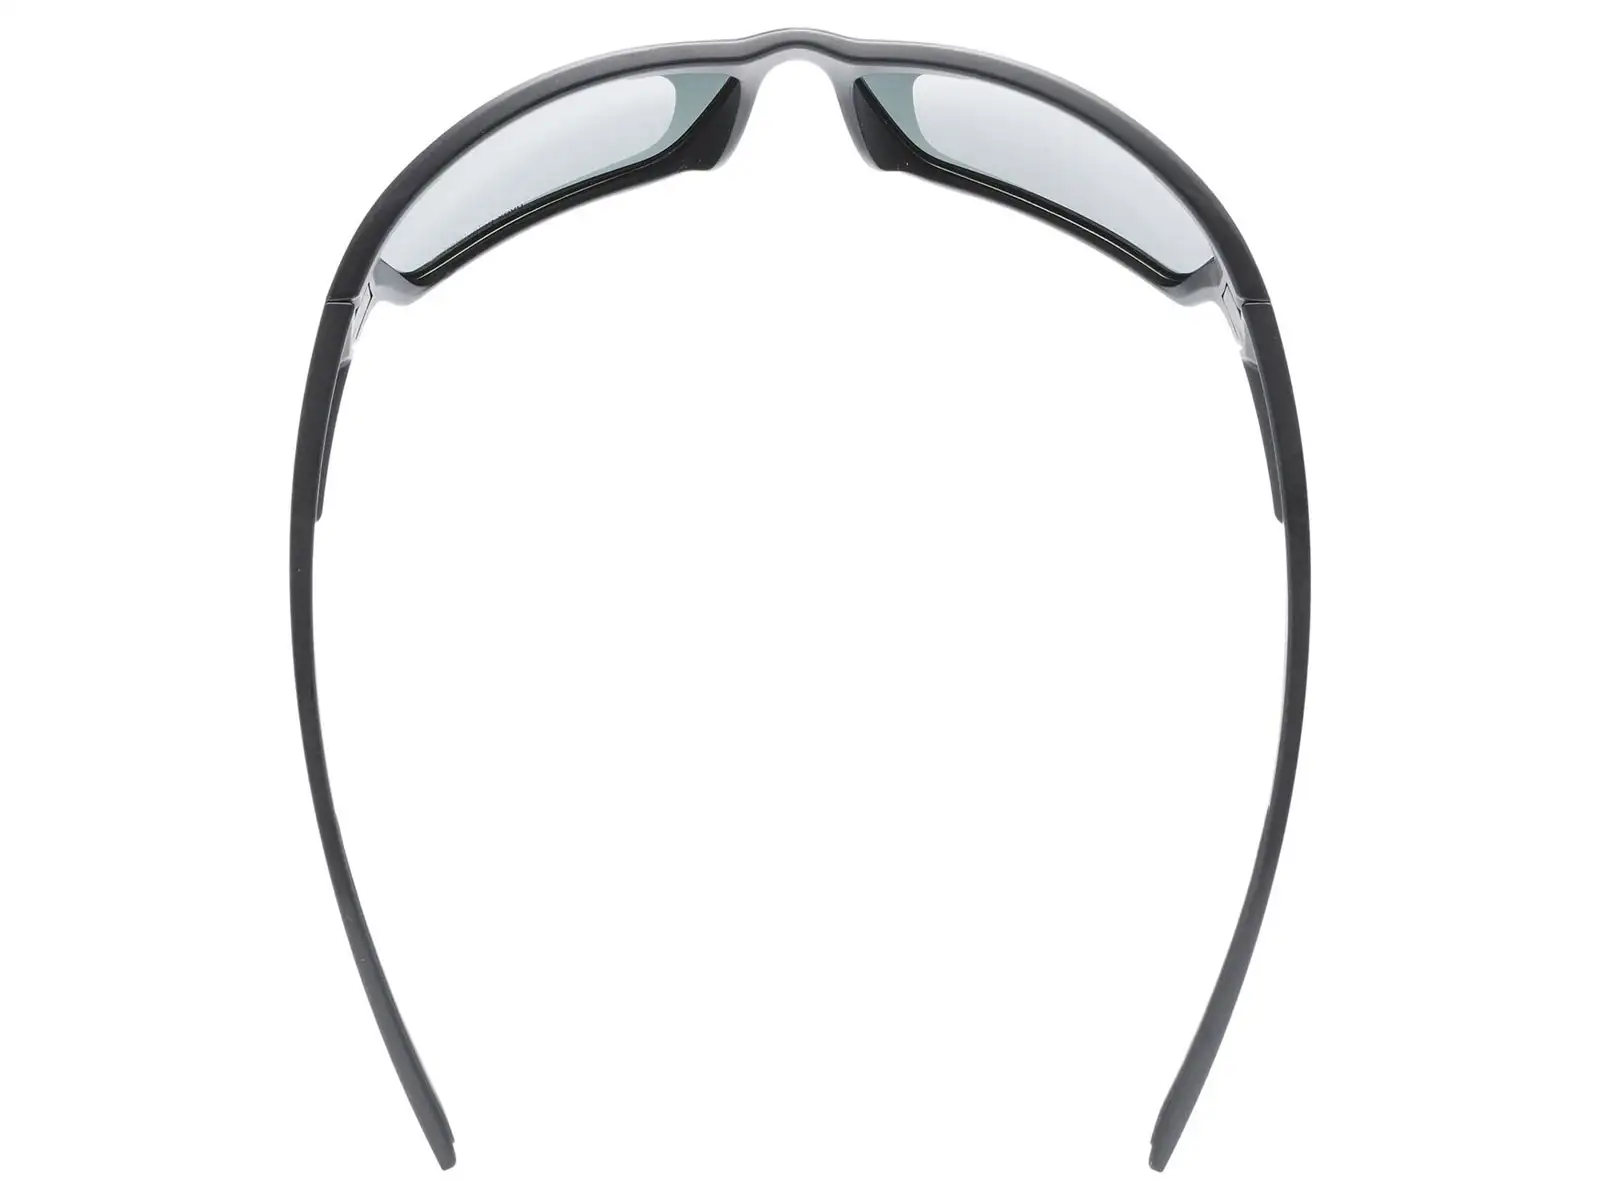 Slnečné okuliare Uvex Sportstyle 233 P Black Mat/Polav